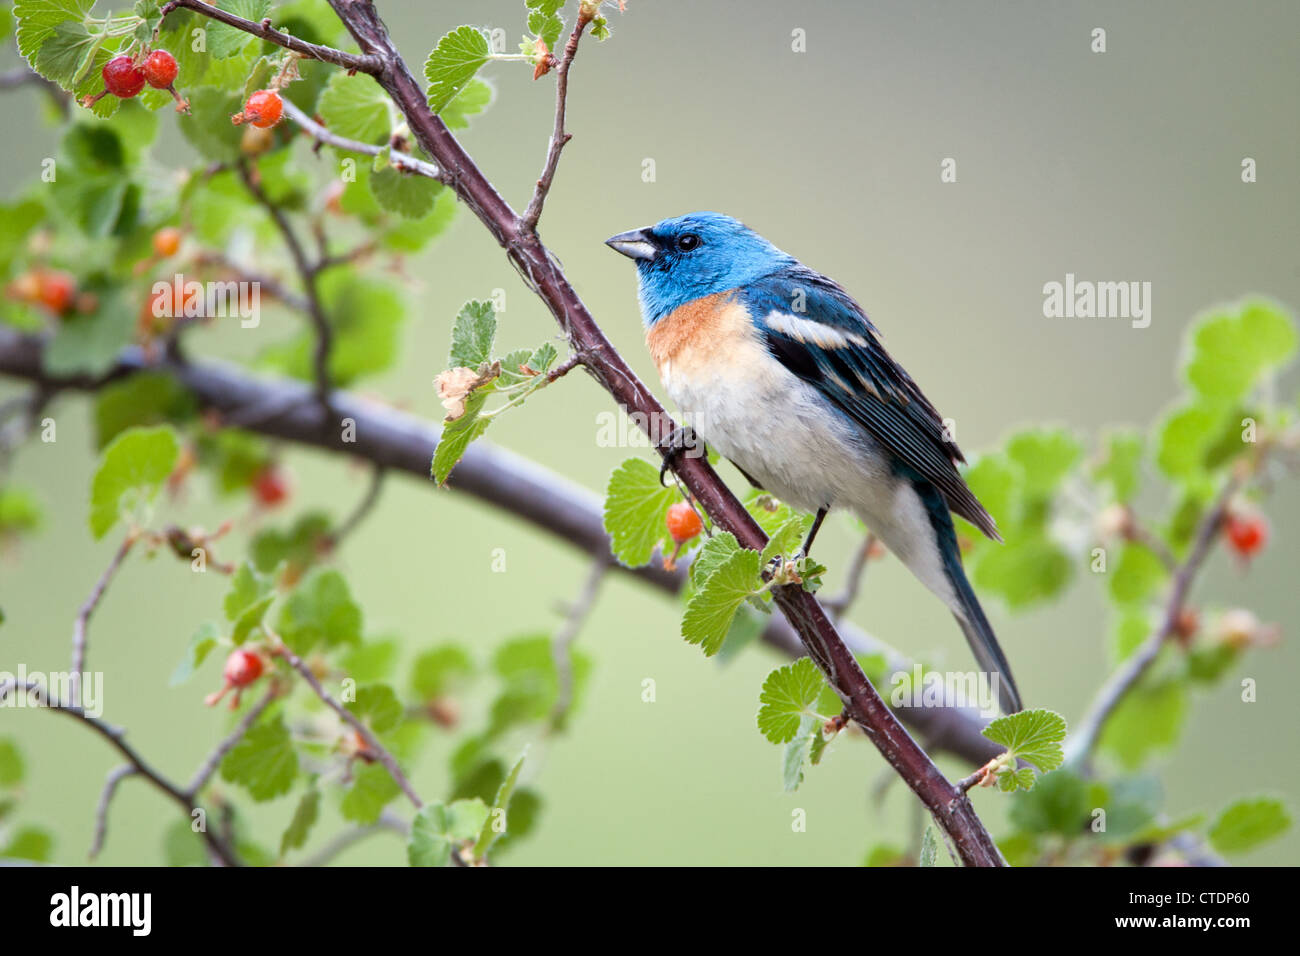 Lazuli Bunting pájaro songbird posado en Western Red Currant berries Foto de stock